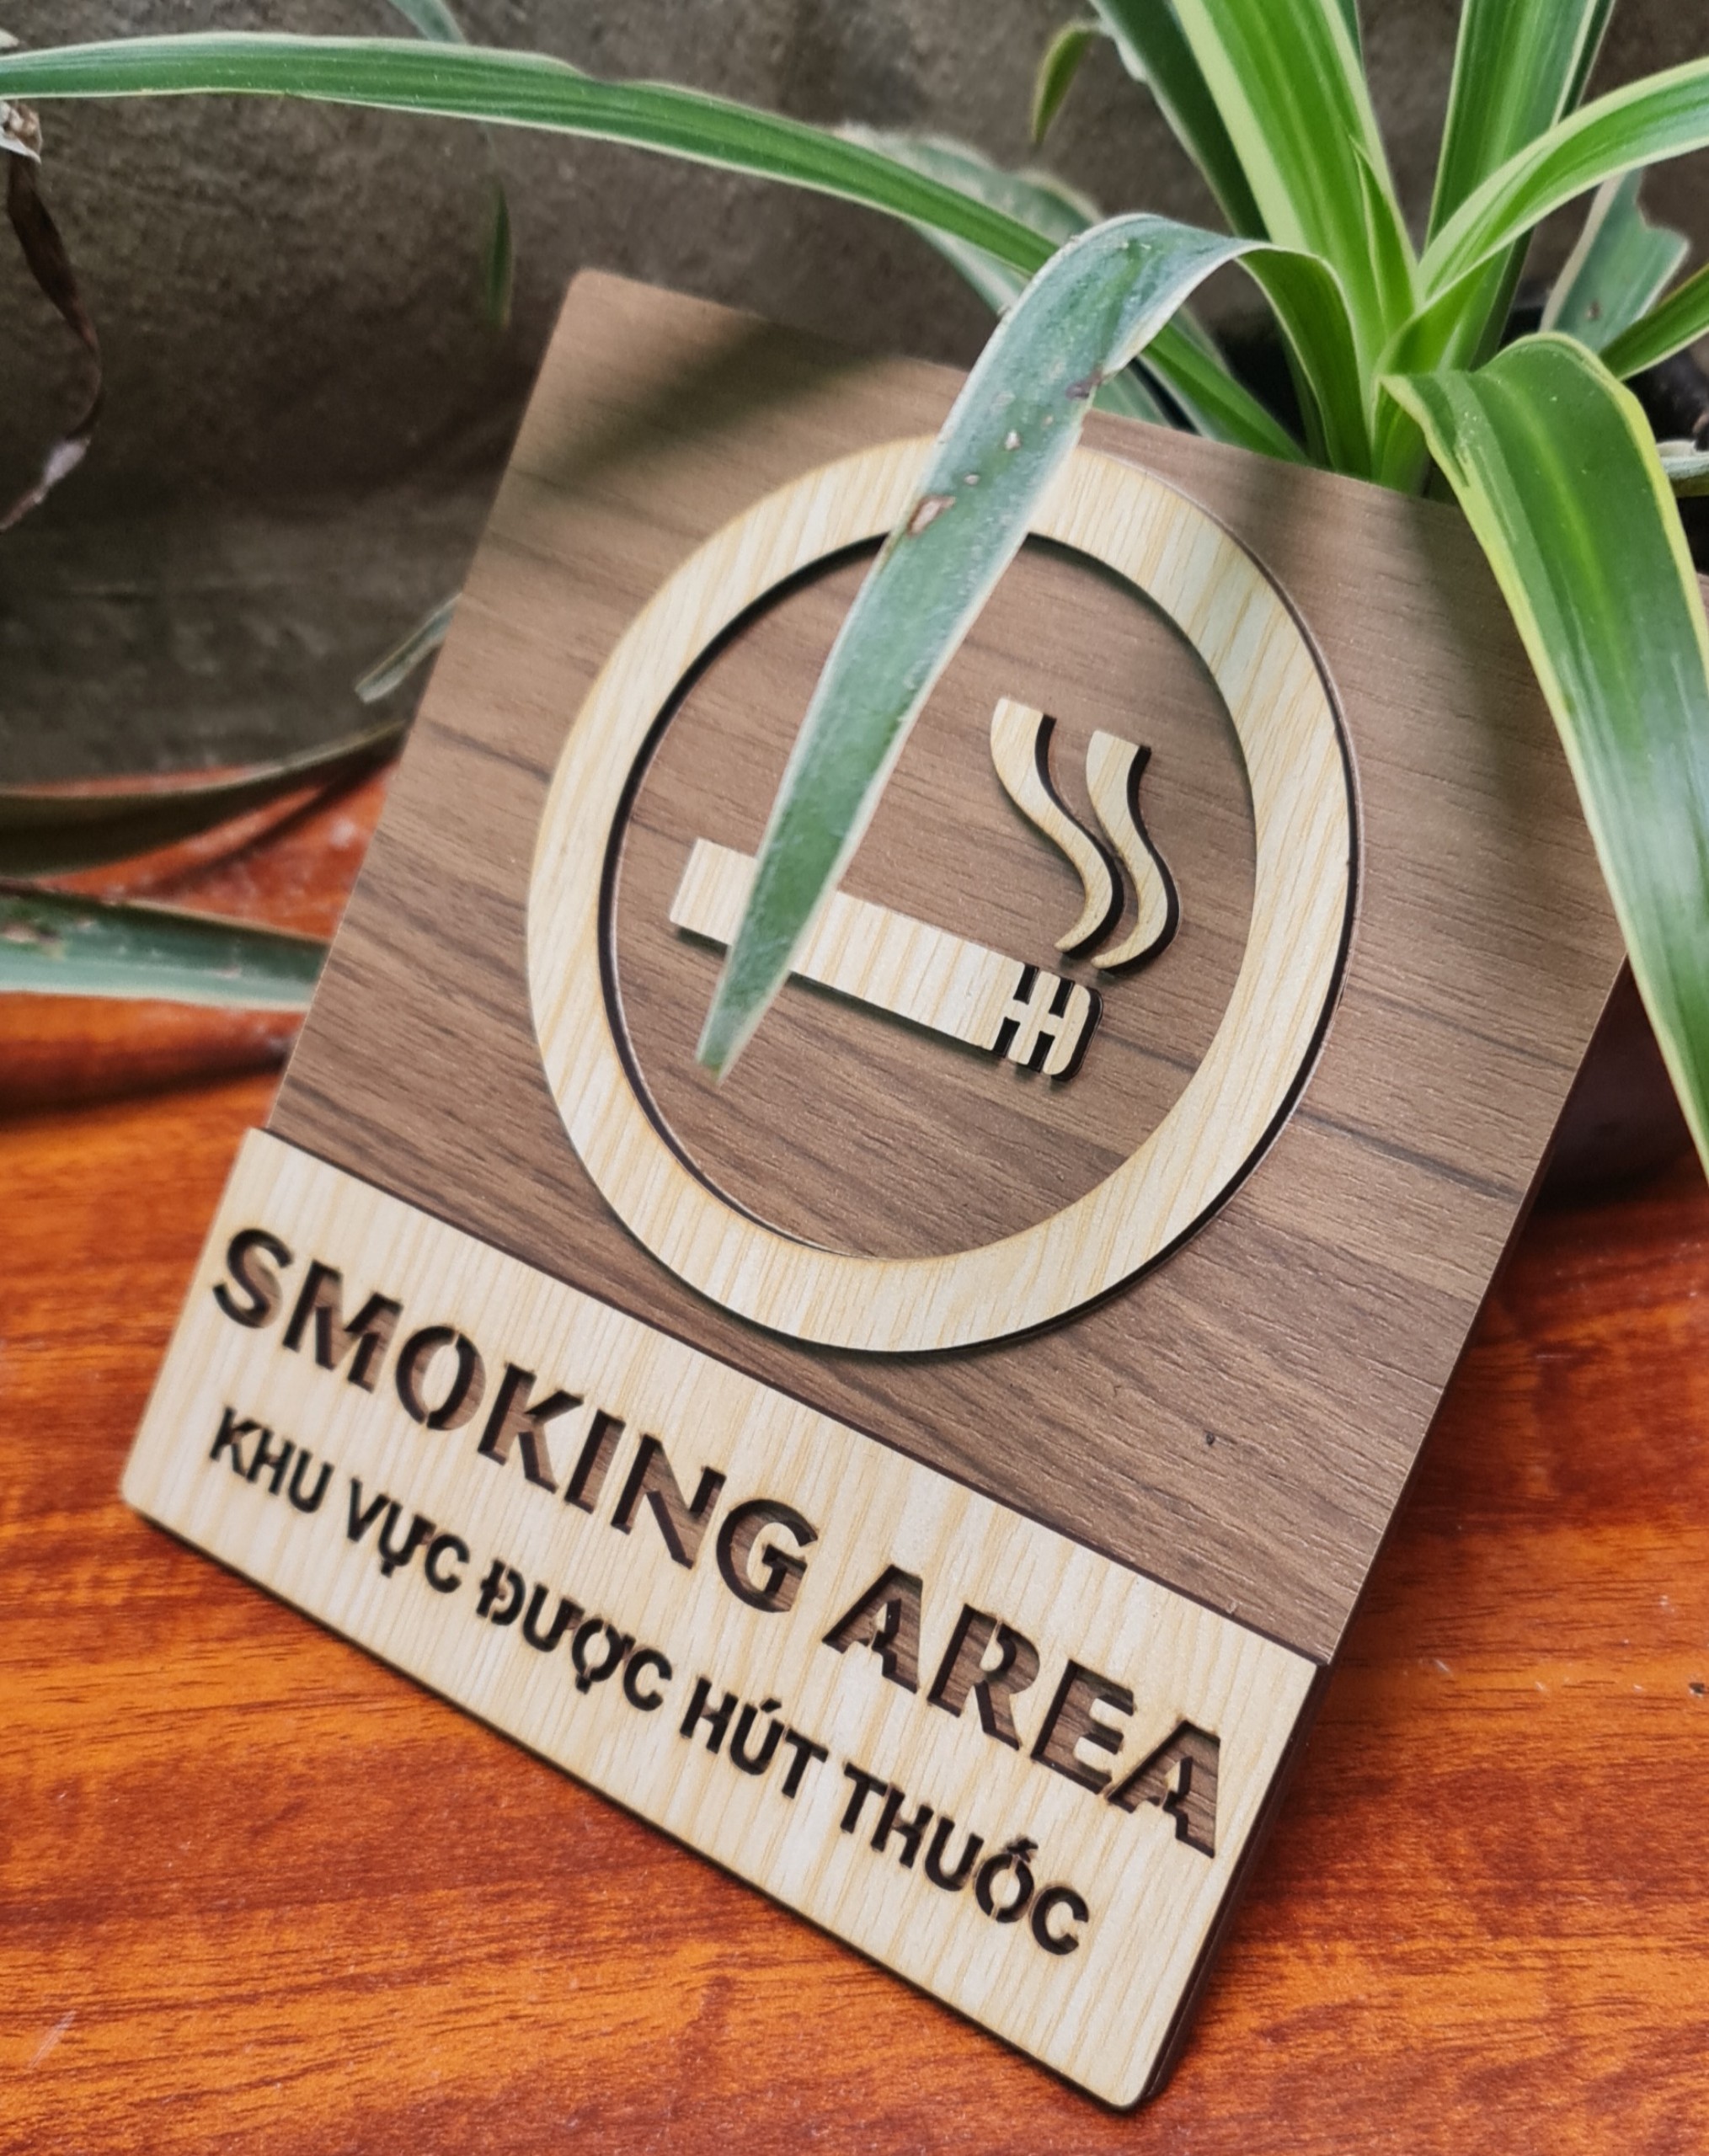 Bảng Cấm hút thuốc, biển báo No smoking, bảng báo Smoking area khu vực hút thuốc